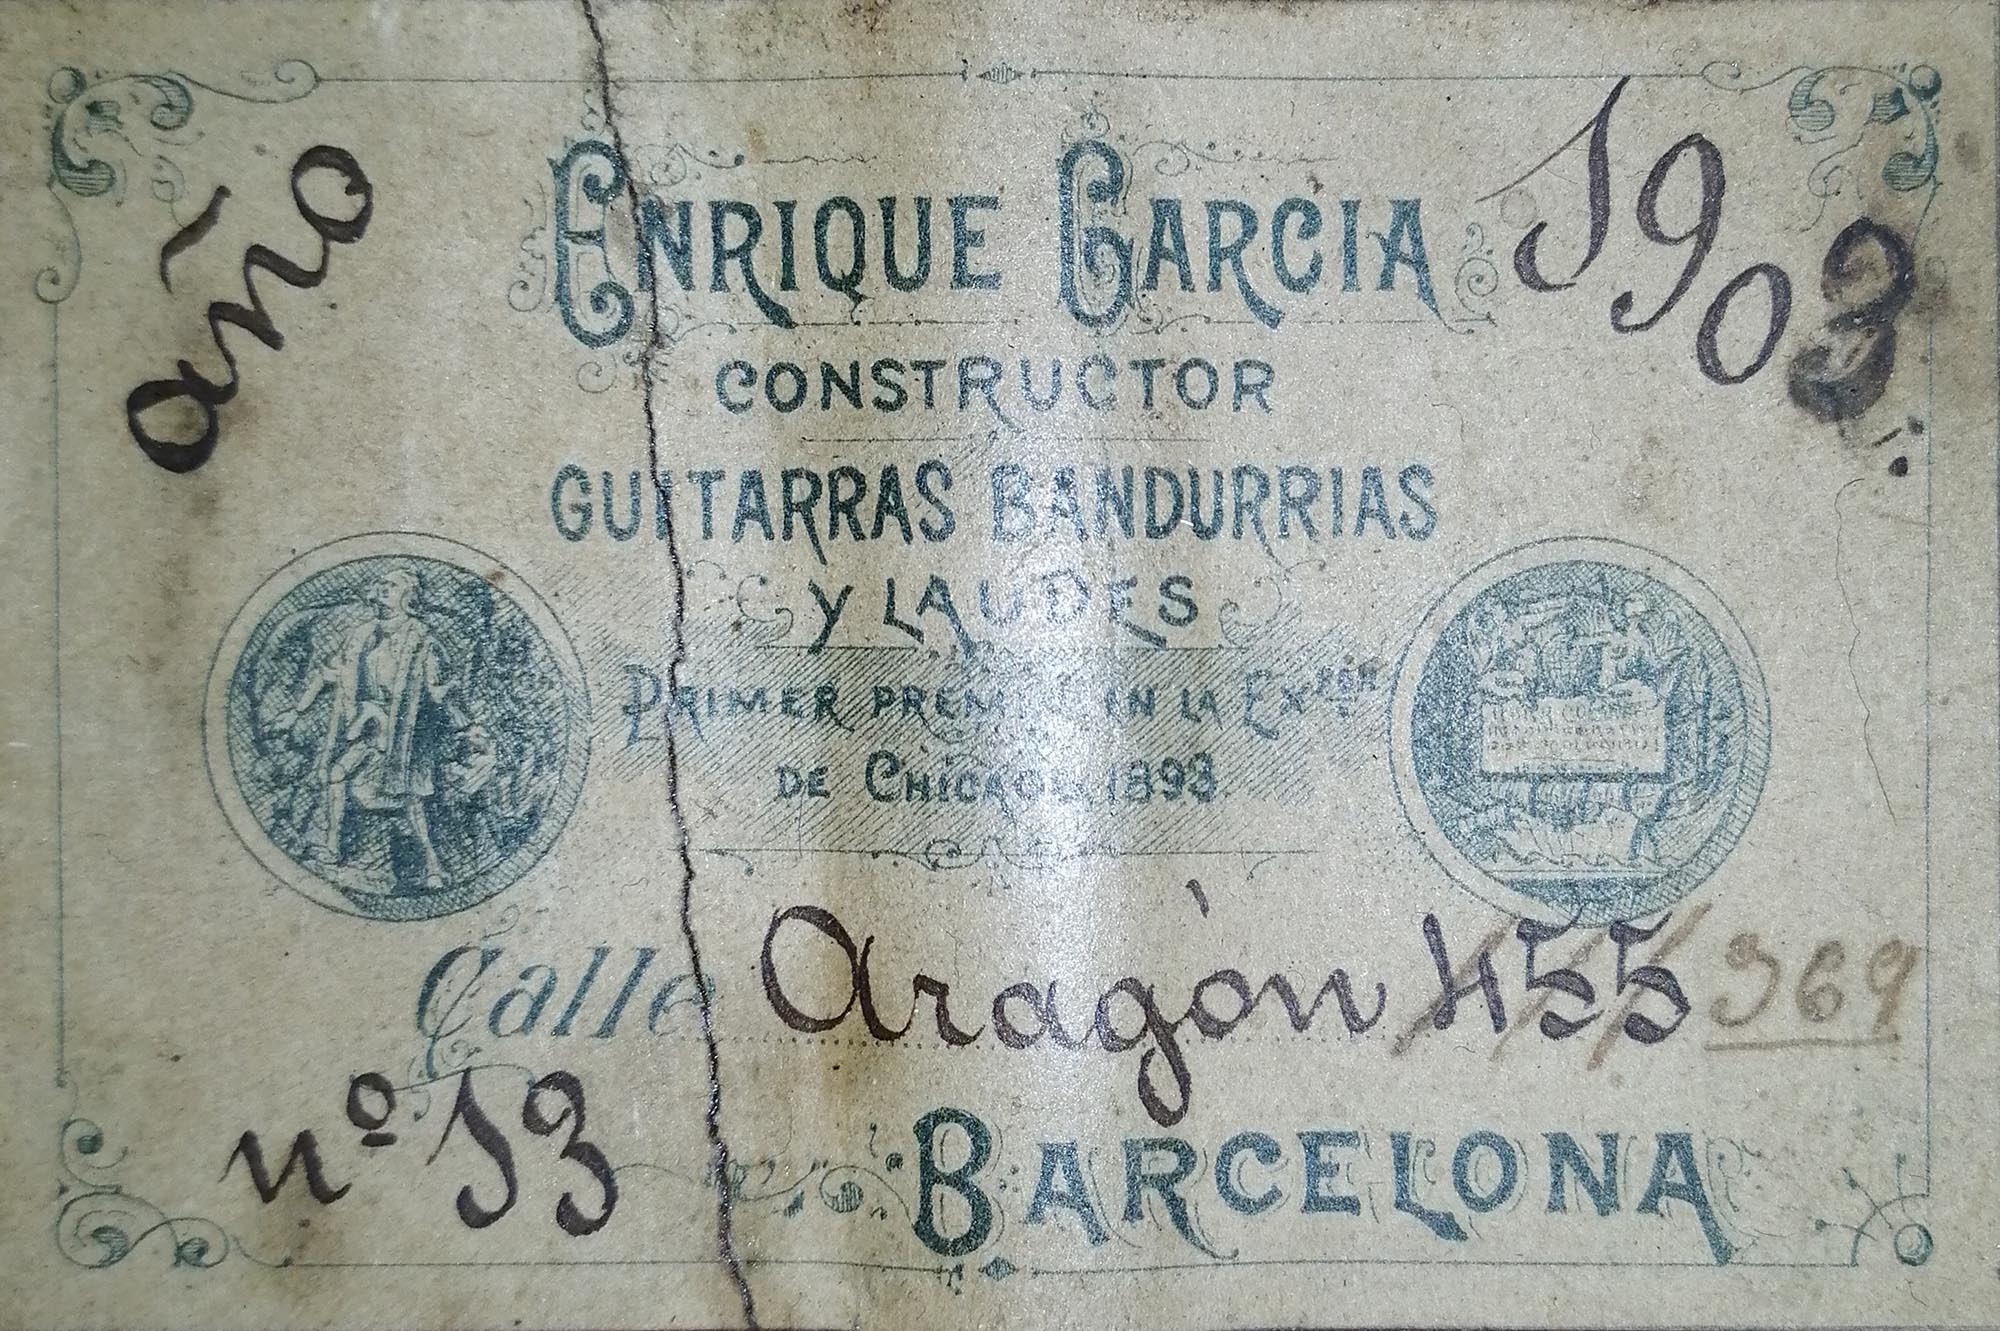 a enriquegarcia 1903 14032019 label